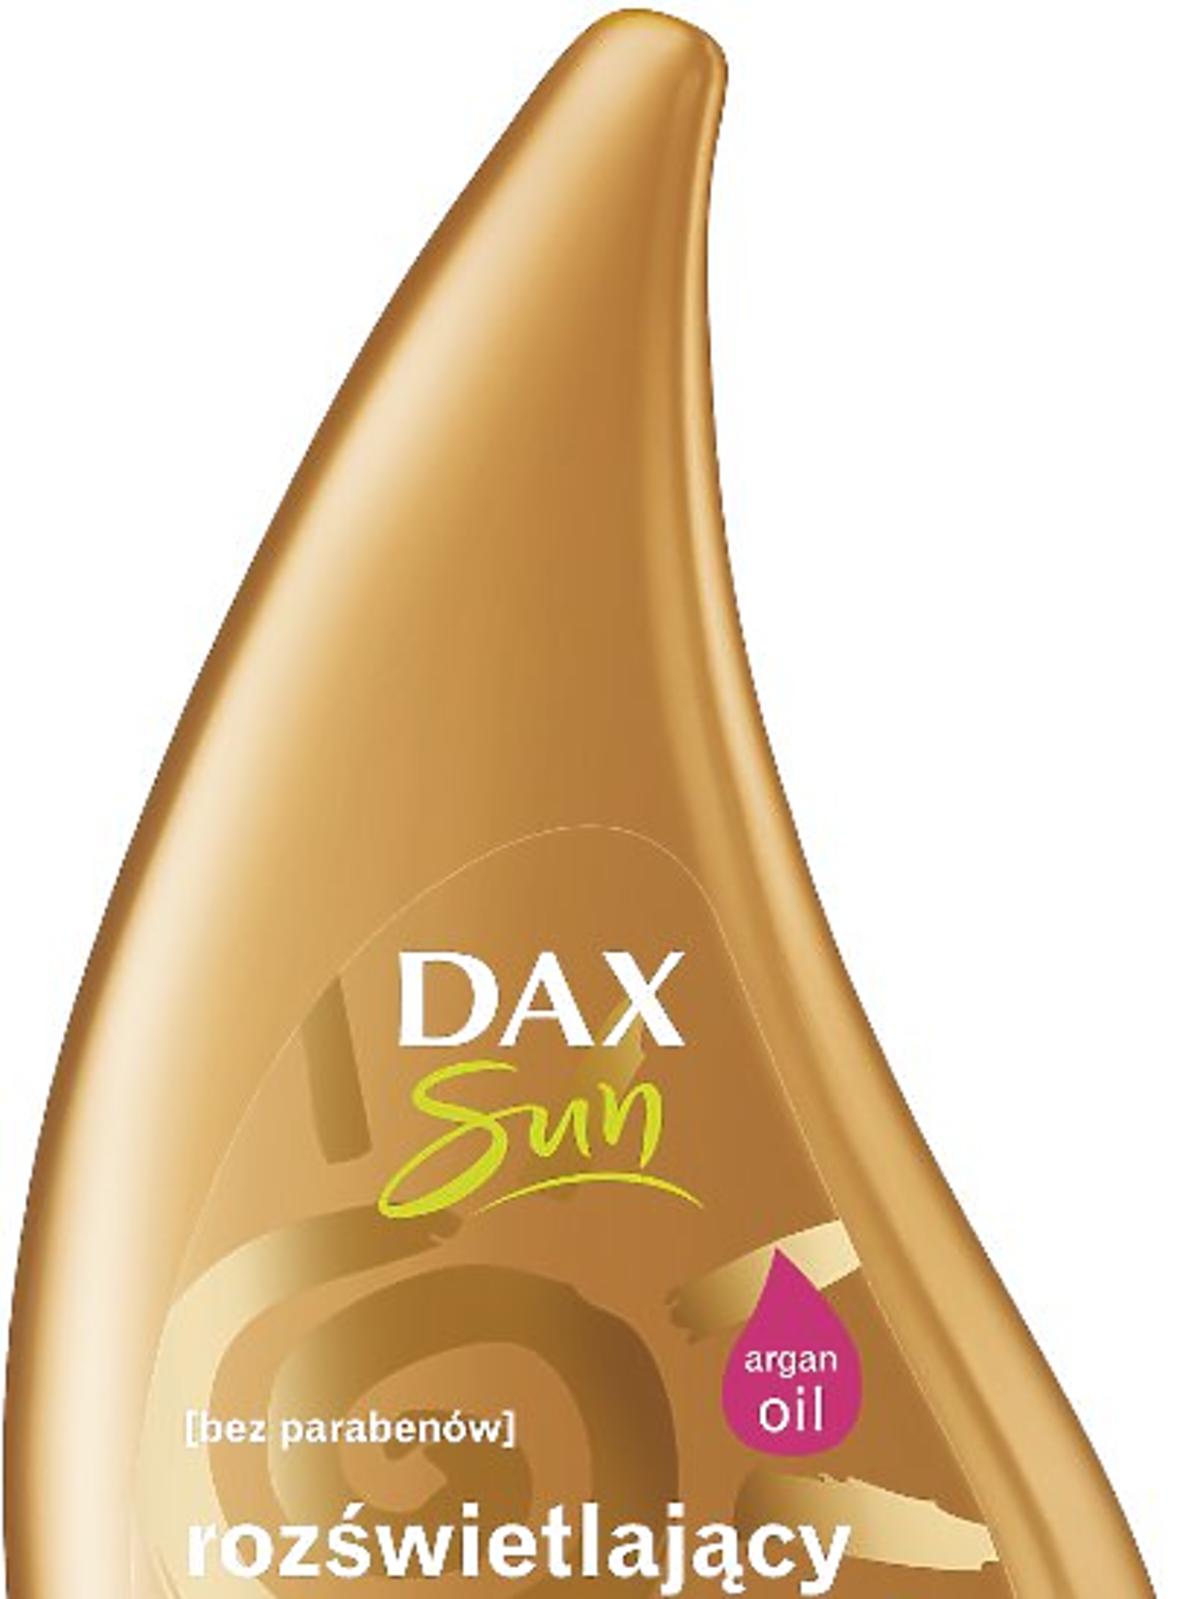 Rozświetlający balsam po opalaniu Dax Sun, 14zł